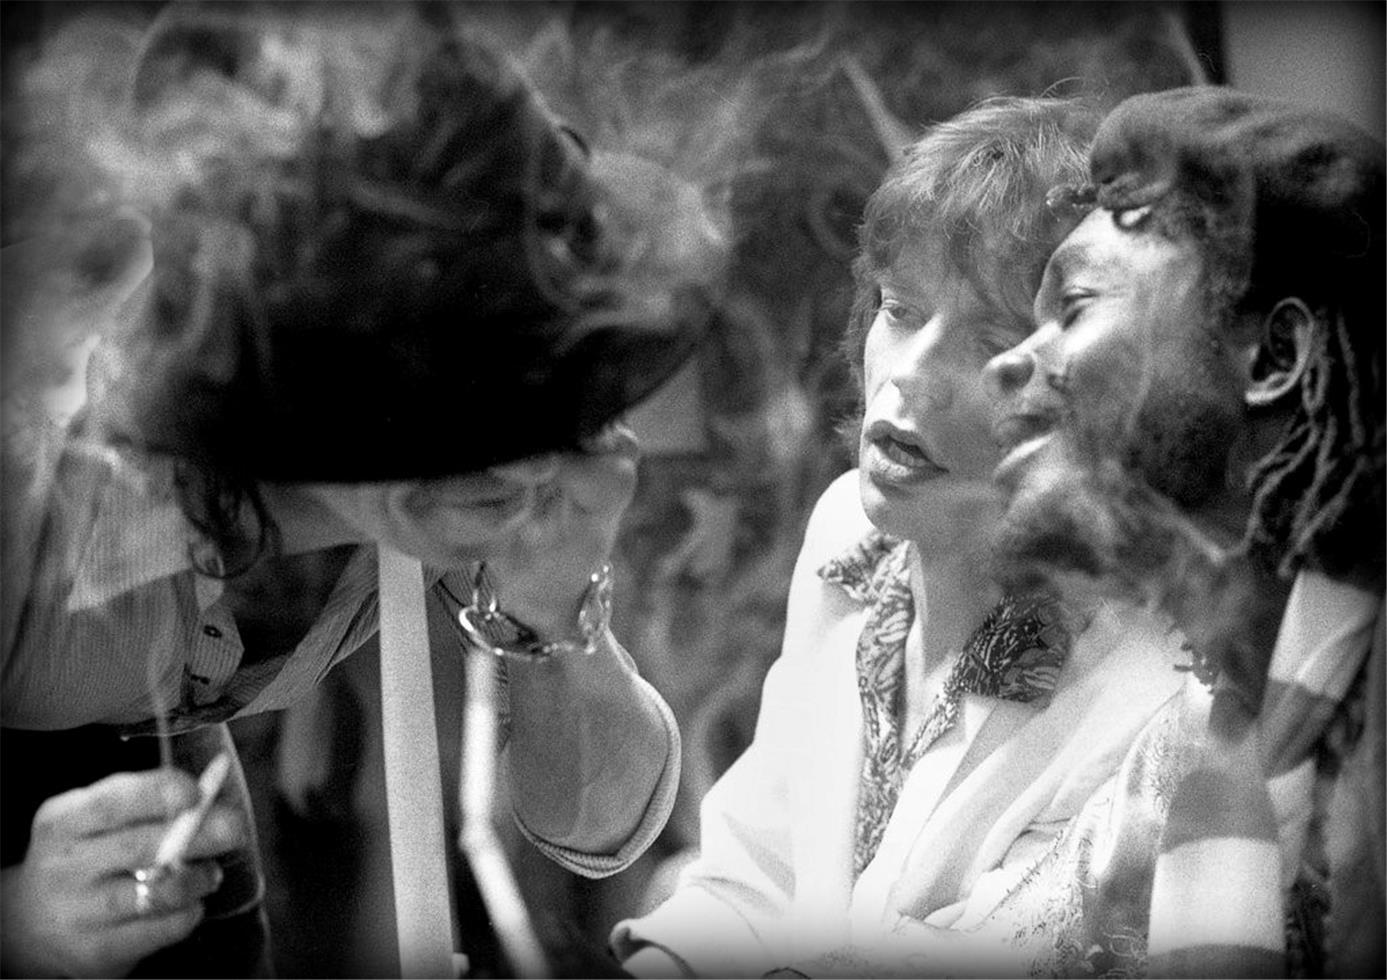 Portrait Photograph Peter Simon - Keith Richards, Mick Jagger et Peter Tosh, 1978